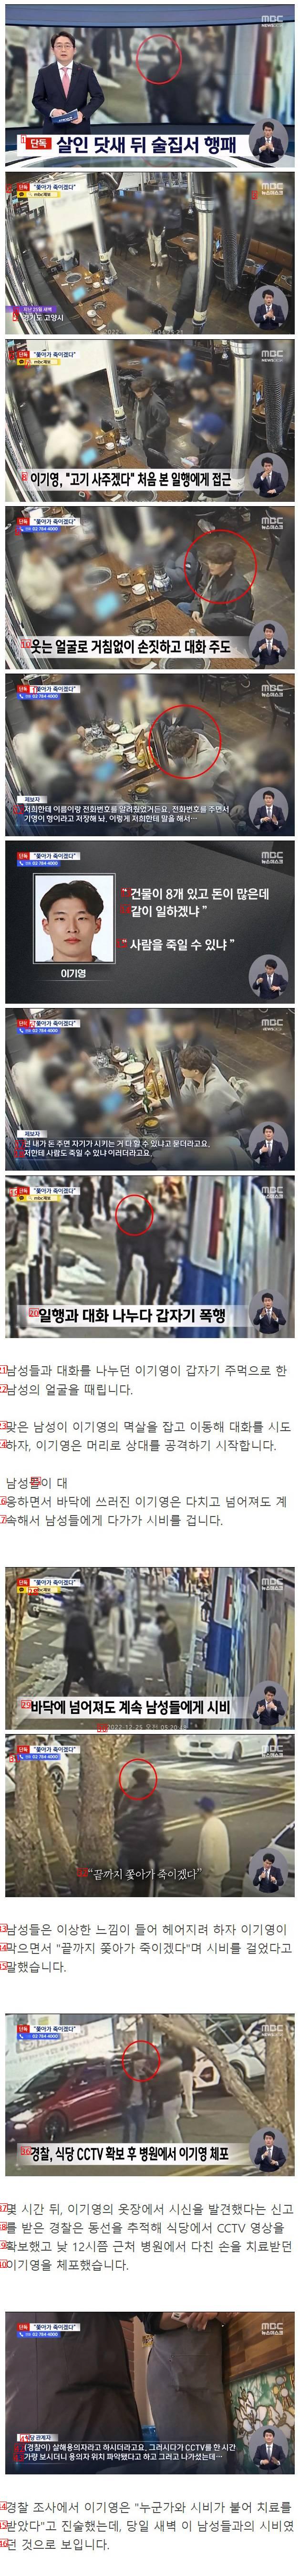 택시기사 살해범 이기영 검거 당일 모습